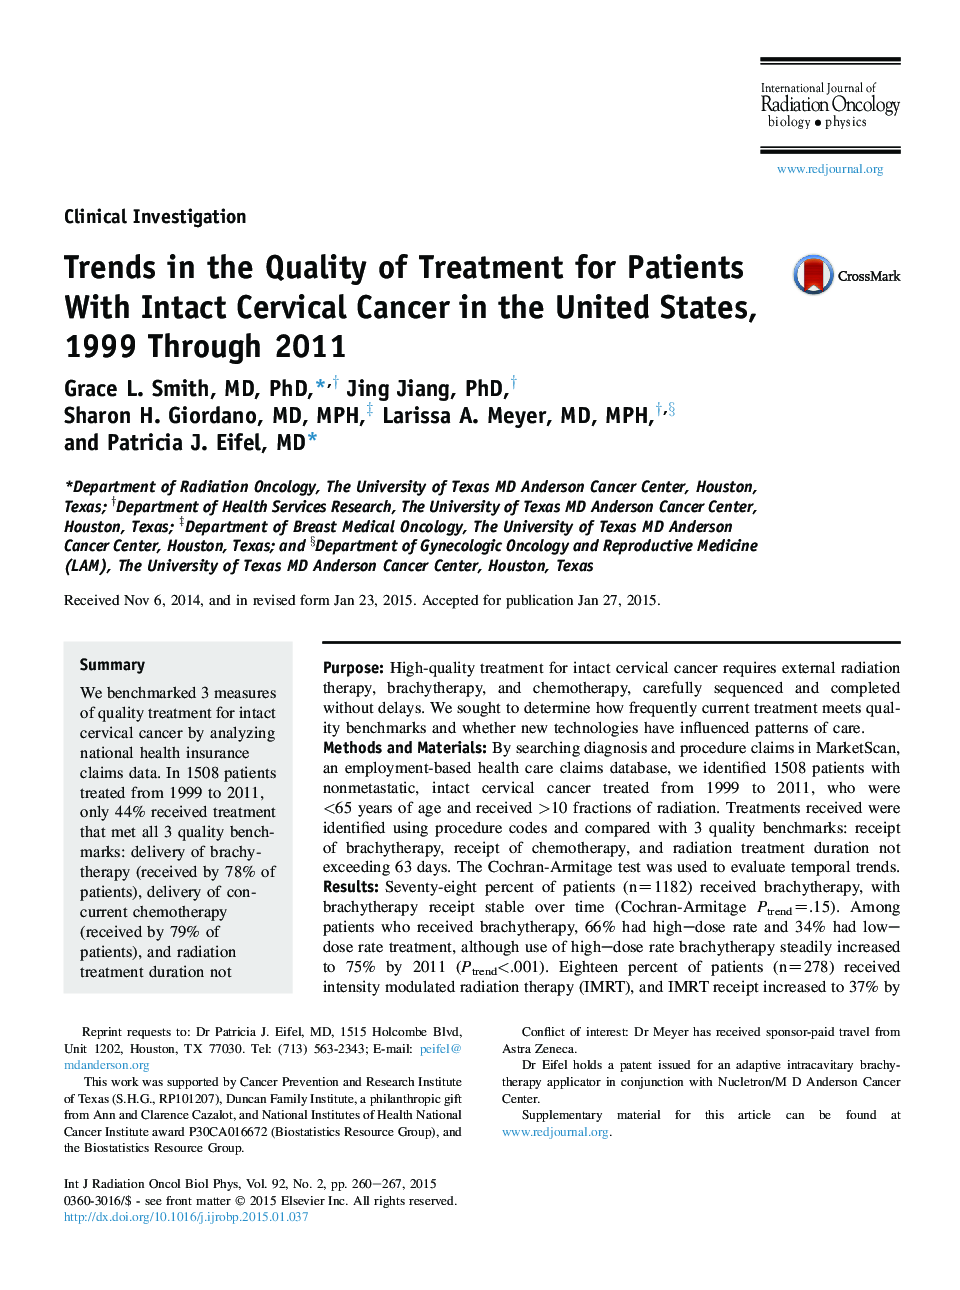 روند بهبود کیفیت درمان بیماران مبتلا به سرطان دهانه رحم ناشی از سرطان در ایالات متحده، 1999 تا 2011 